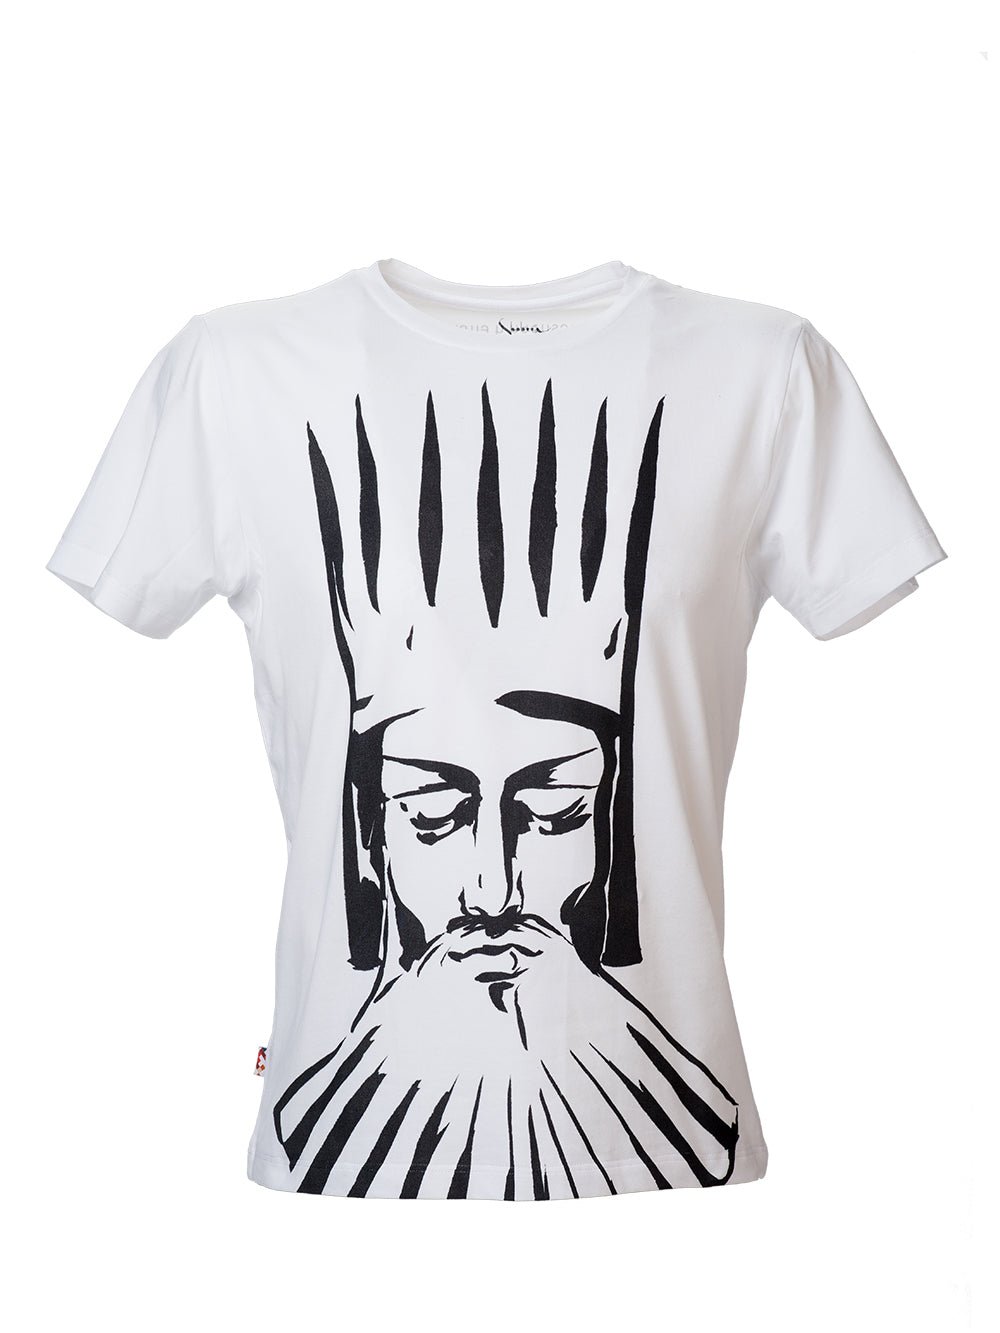 Artaxias I Pious t-shirt